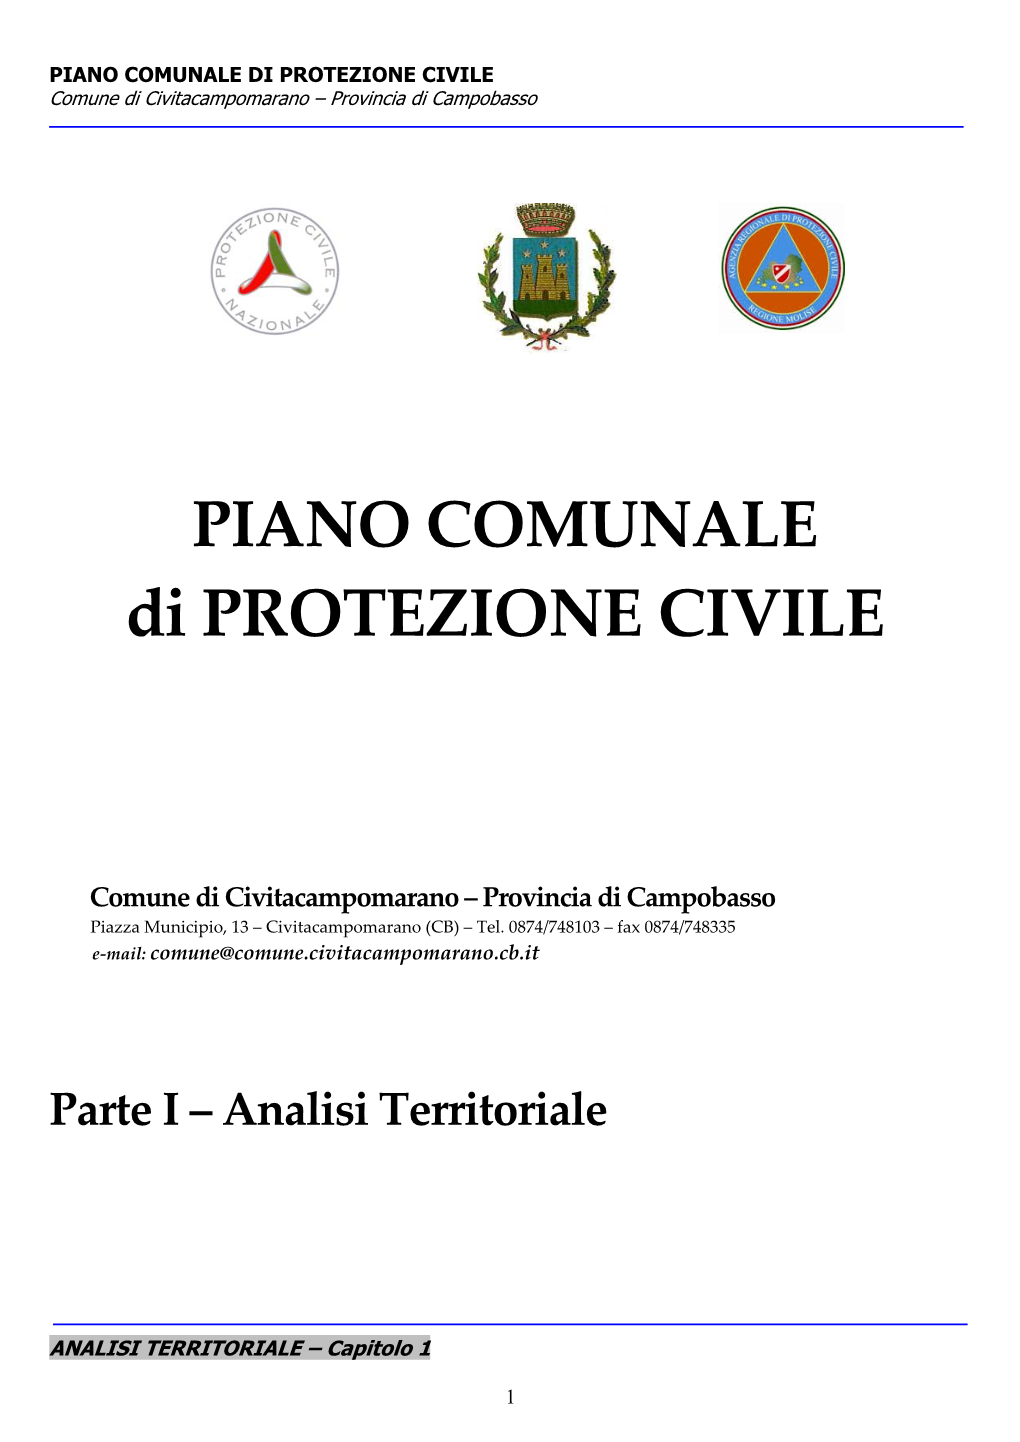 PIANO COMUNALE DI PROTEZIONE CIVILE Comune Di Civitacampomarano – Provincia Di Campobasso